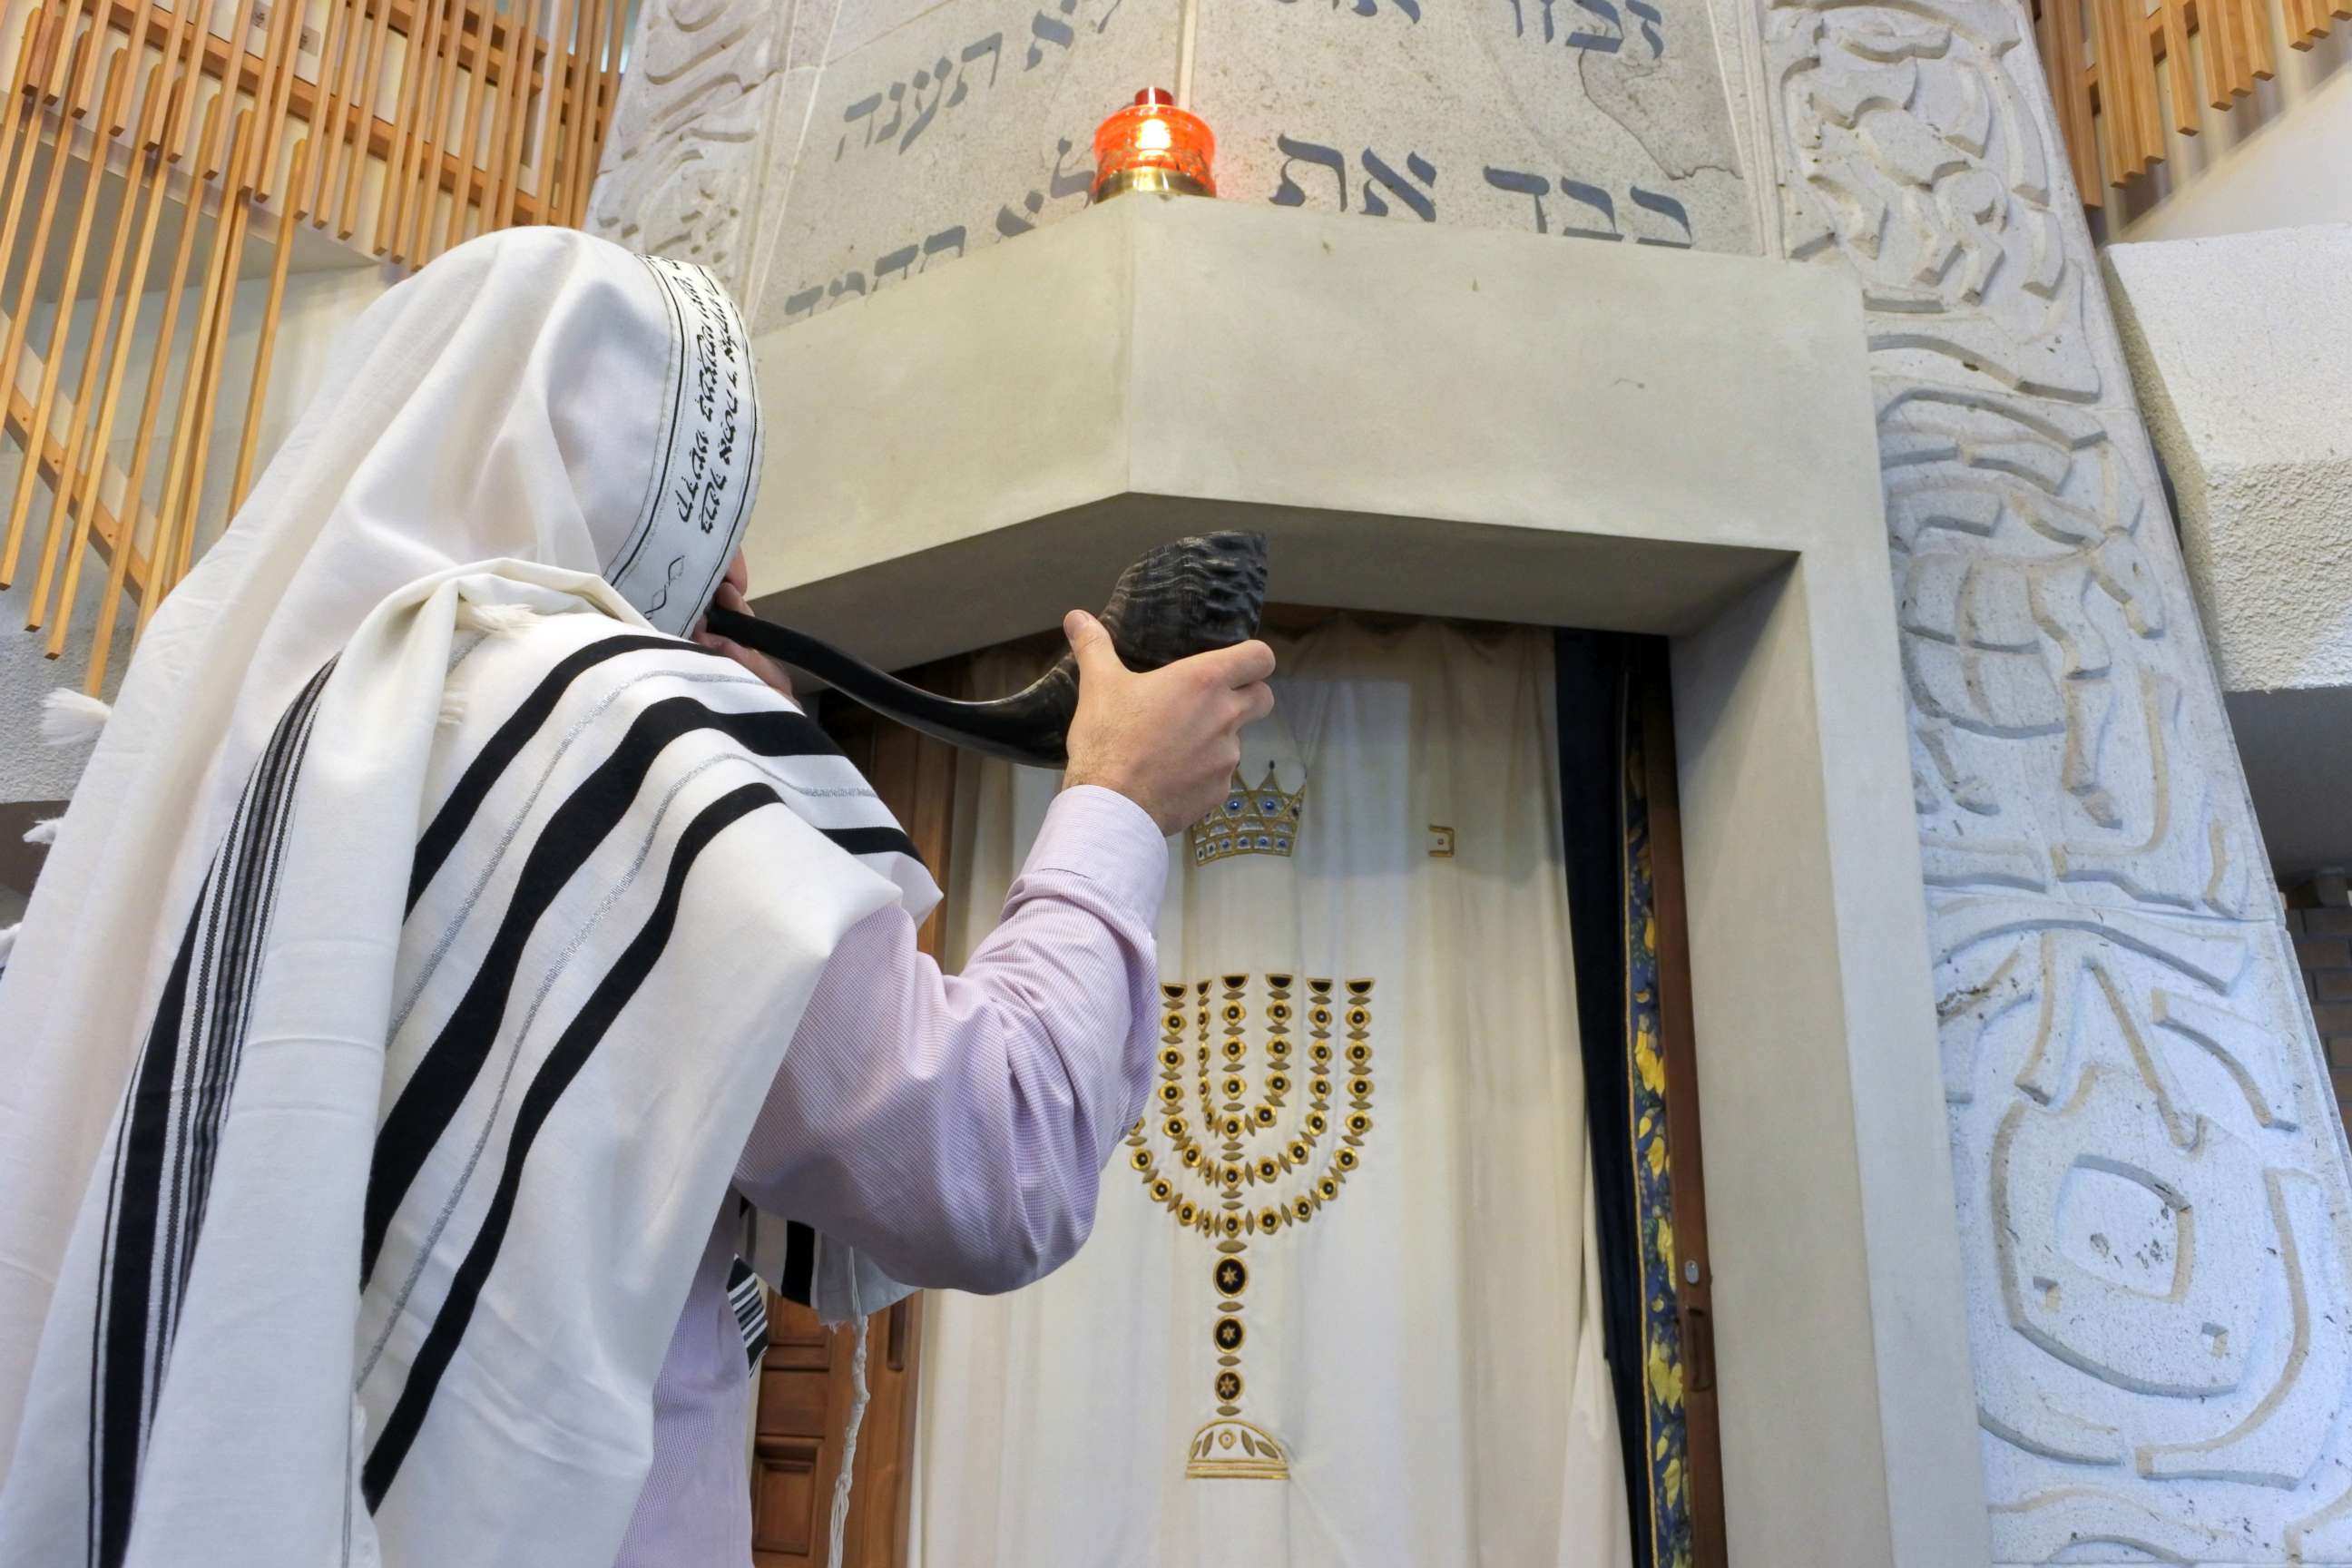 PHOTO: A Rabbi blows the Shofar in a synagogue.